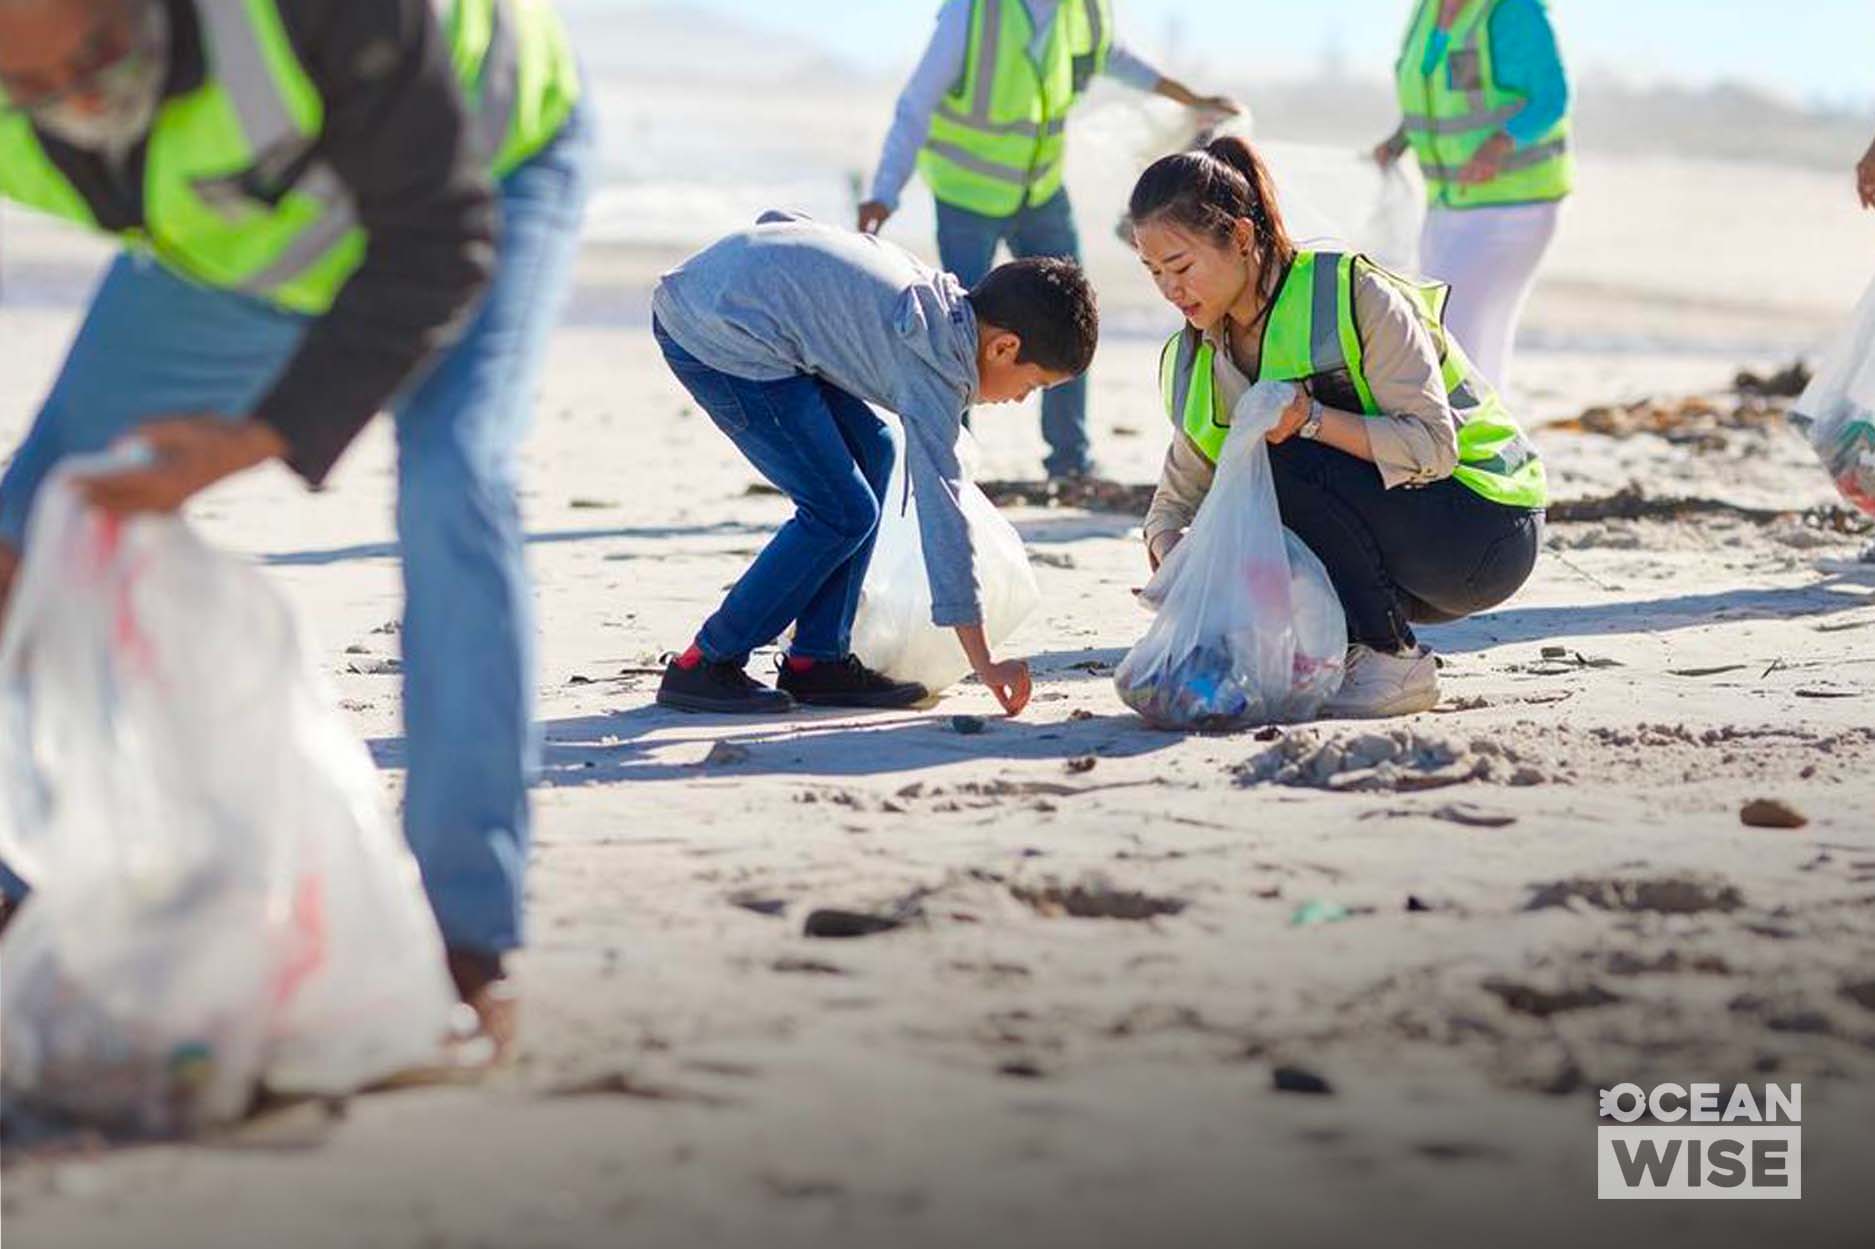 Description de la photo : Des personnes ramassent des déchets et les mettent dans des sacs de plastique blancs lors du nettoyage d’une plage de sable.